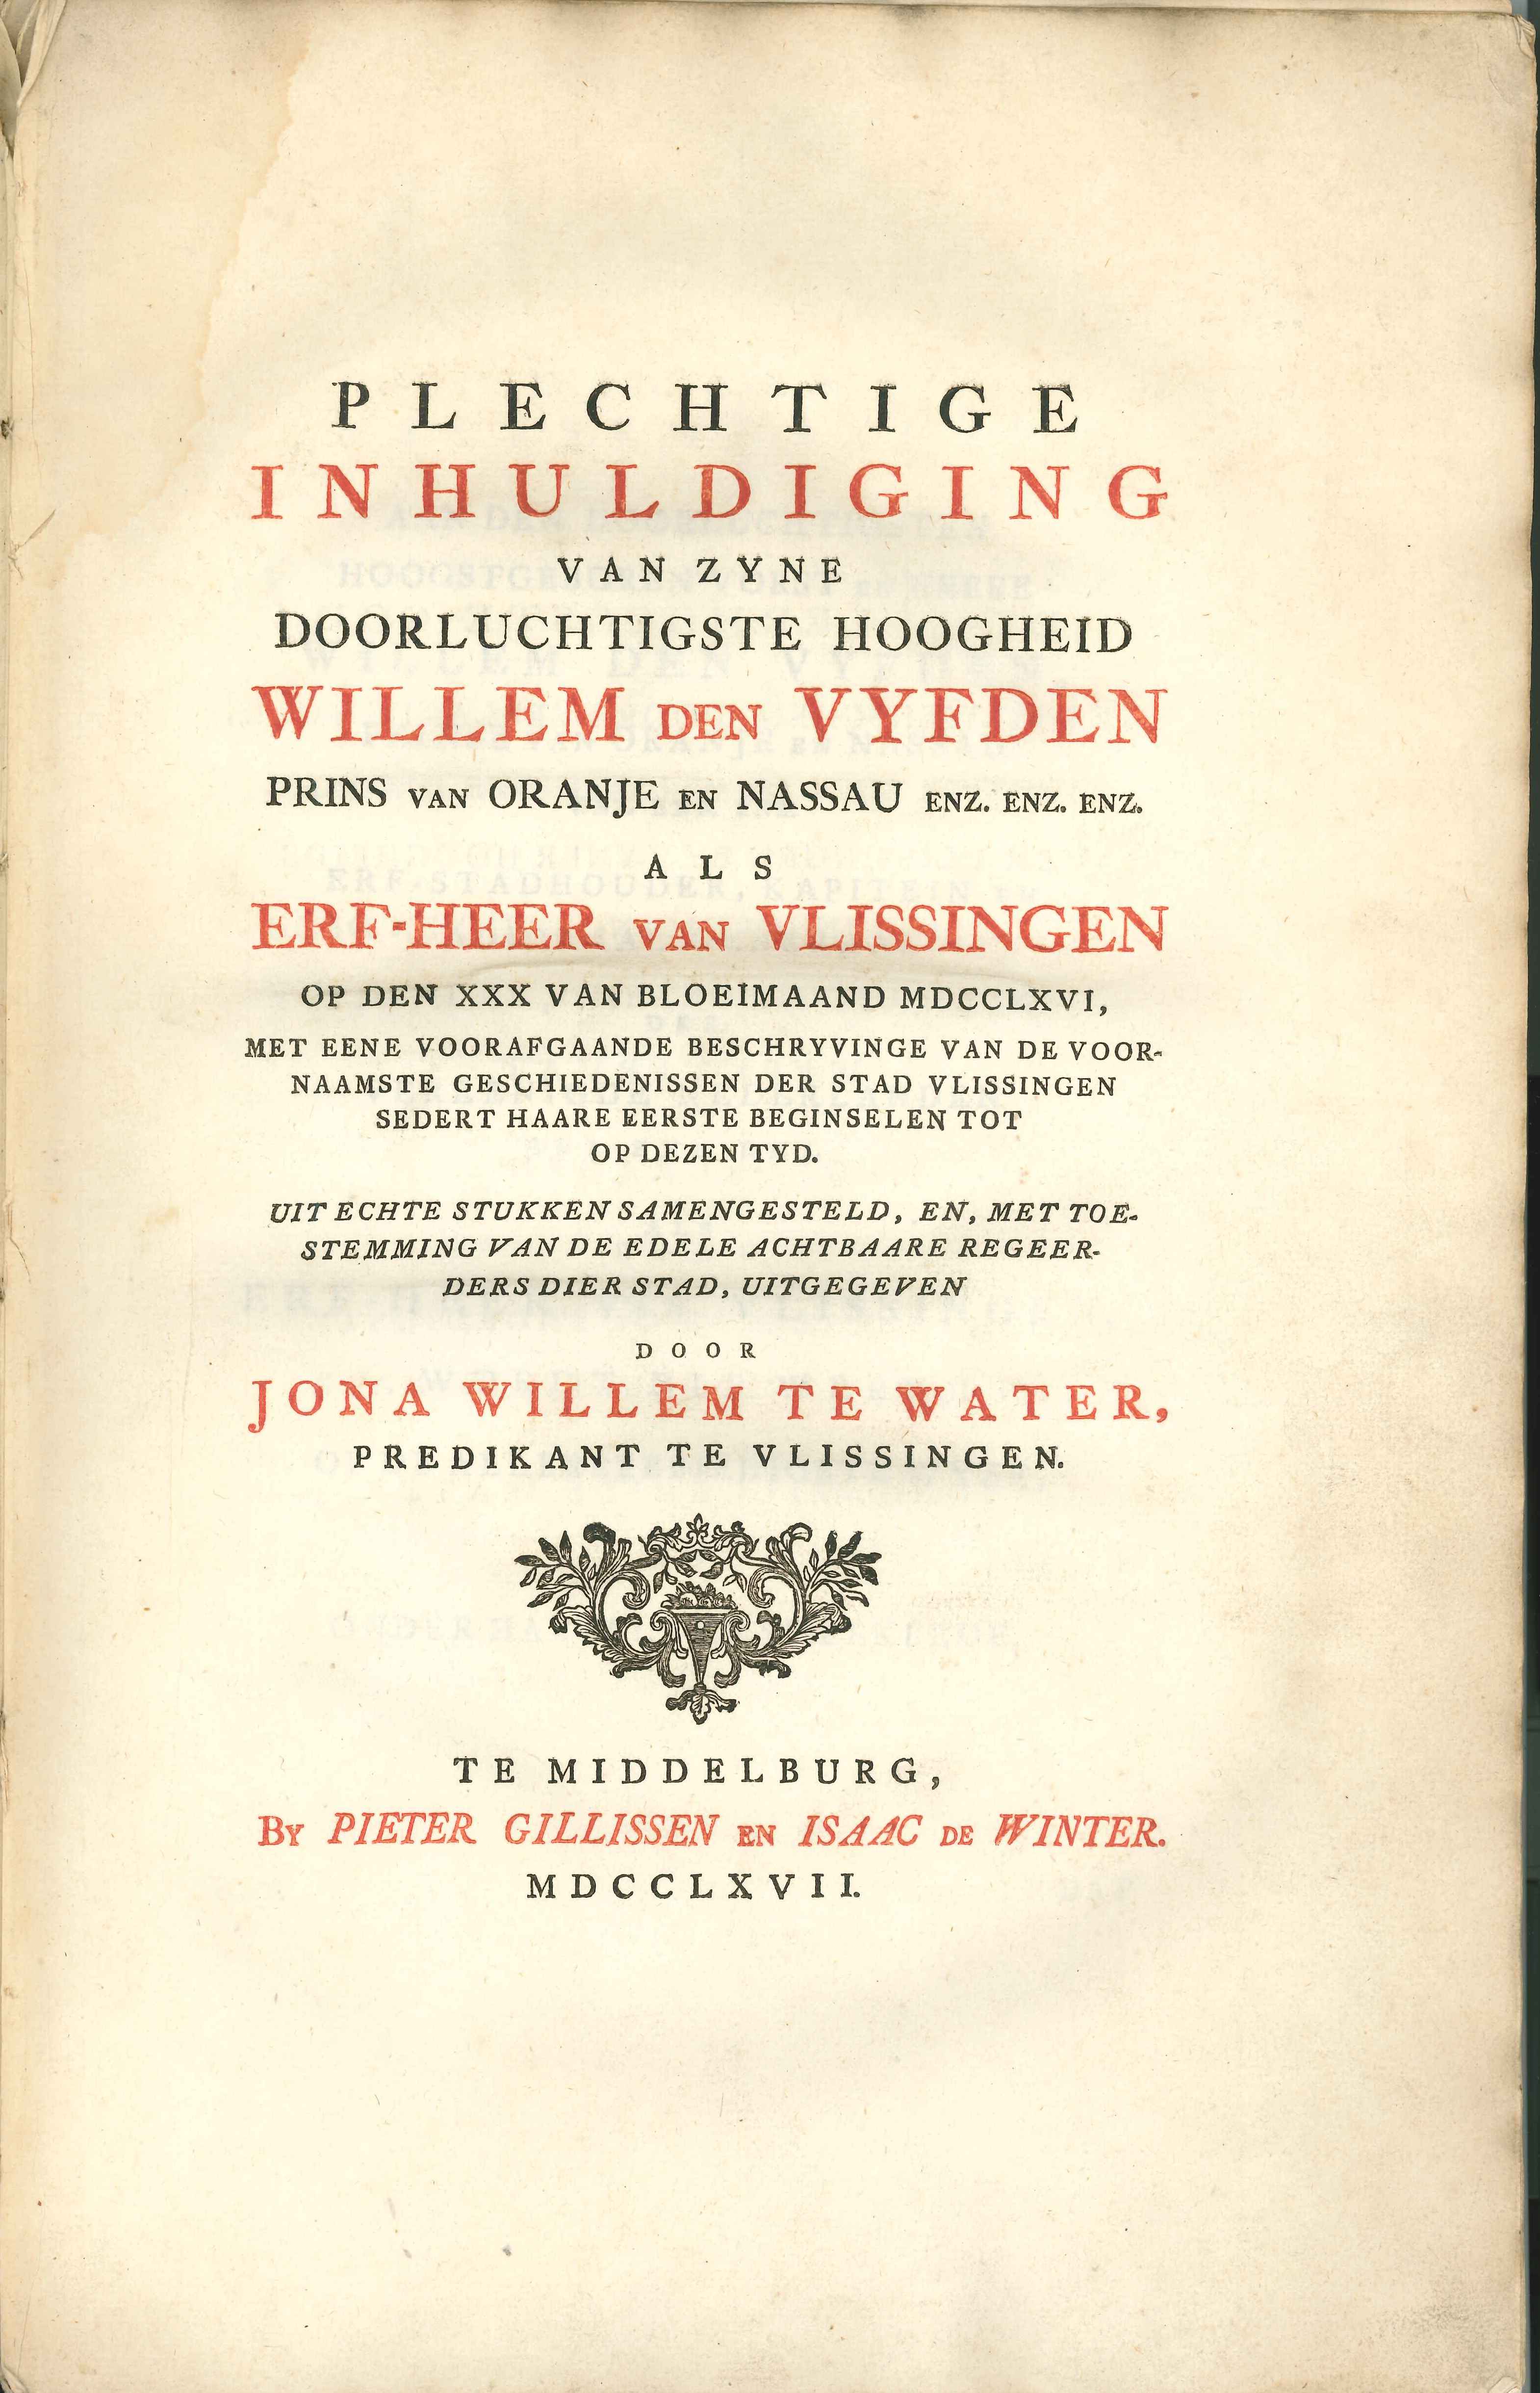 Titelblad van een publicatie van J.W. te Water uit Vlissingen, 1767.